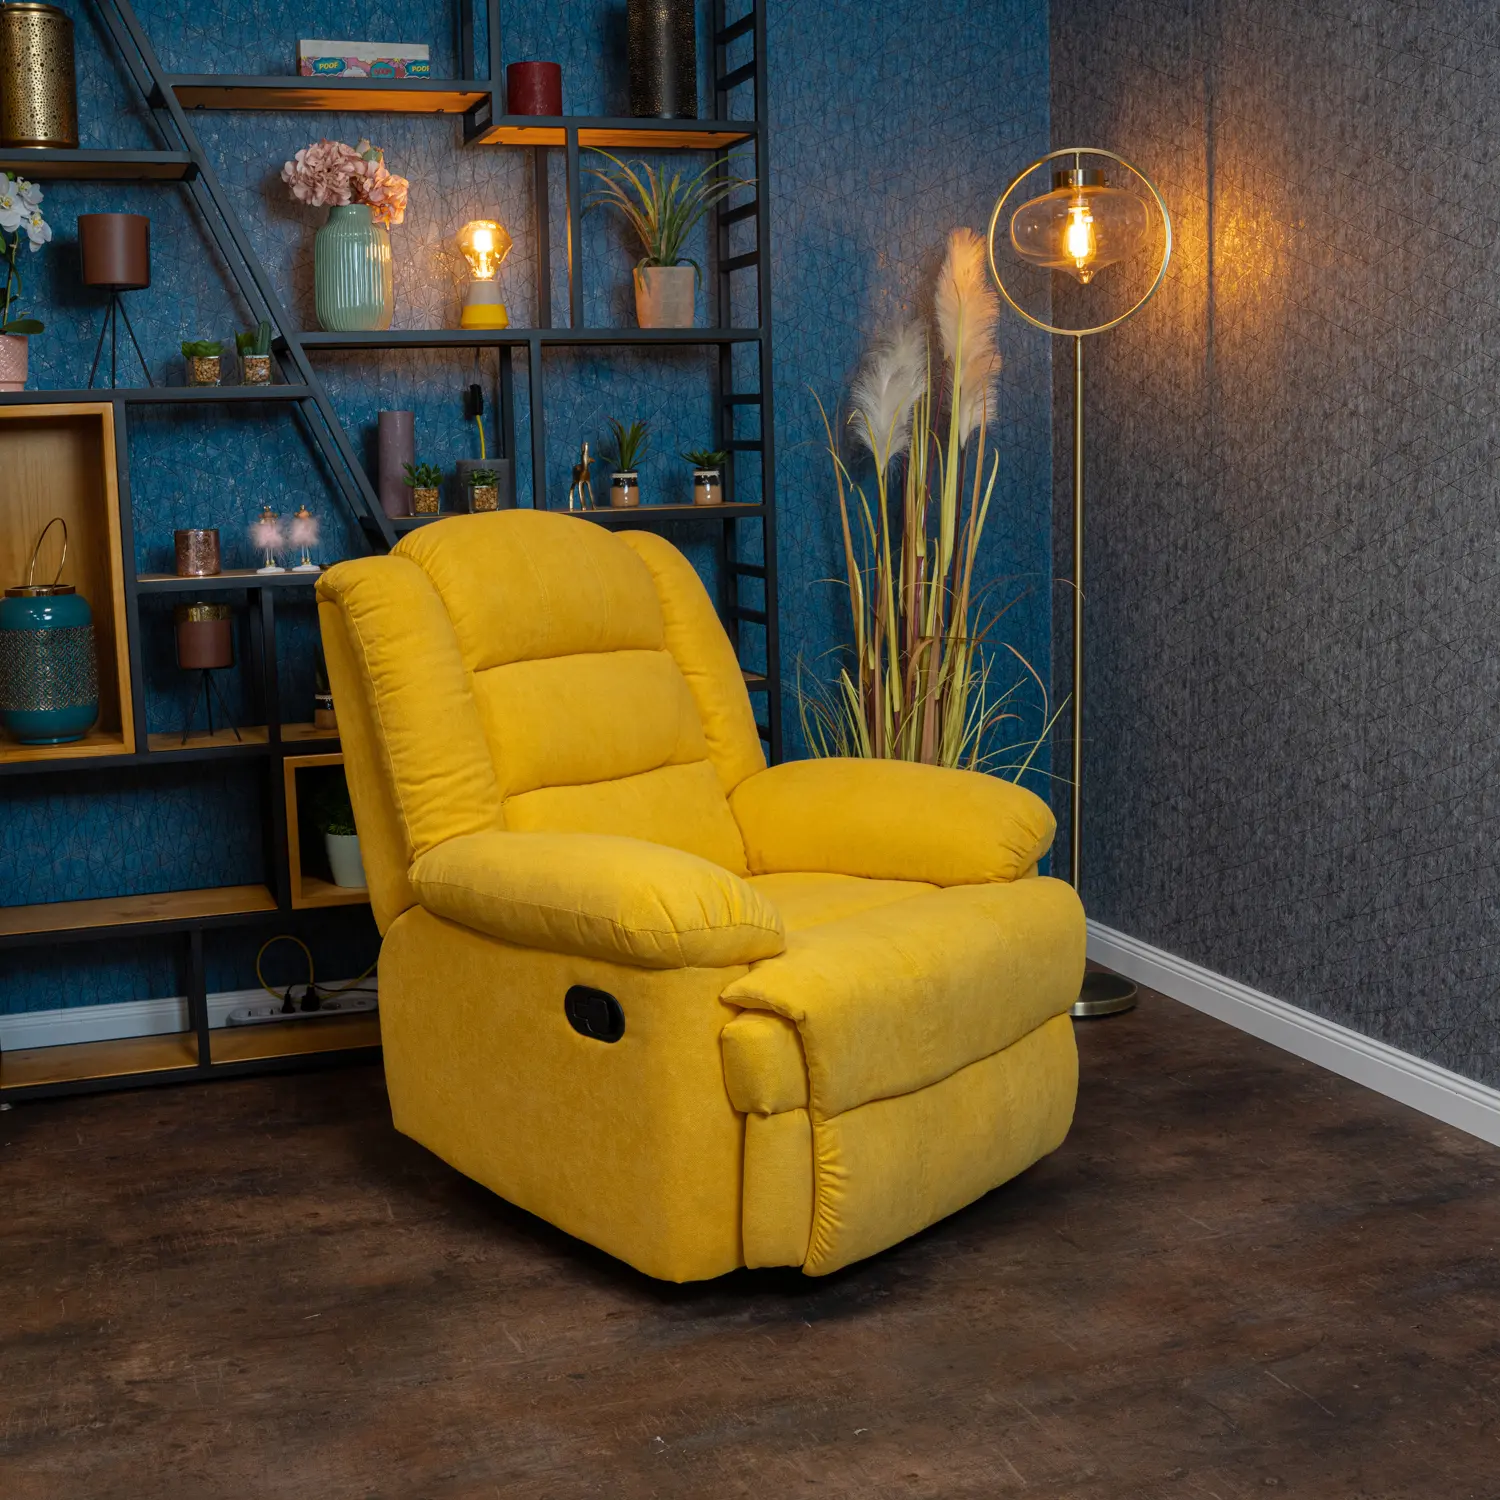 Fekvőfotel, relax fotelágy dönthető háttámlával, lábtartóval citromsárga szövet (8002-LEMON)